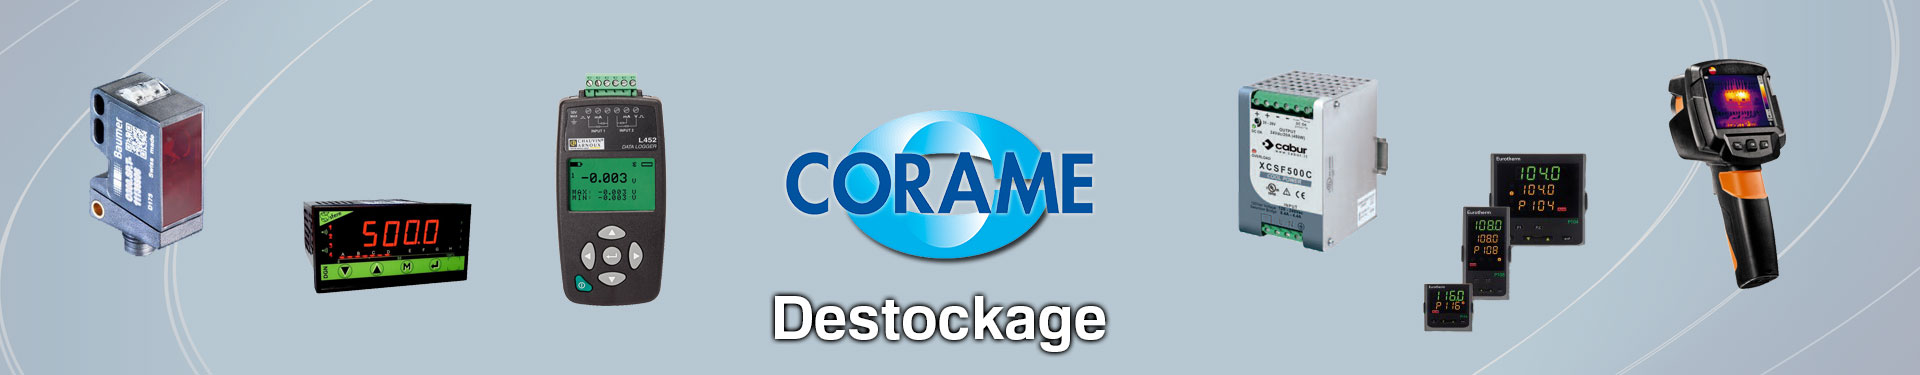 Produits Destockage sélectionnés par Corame